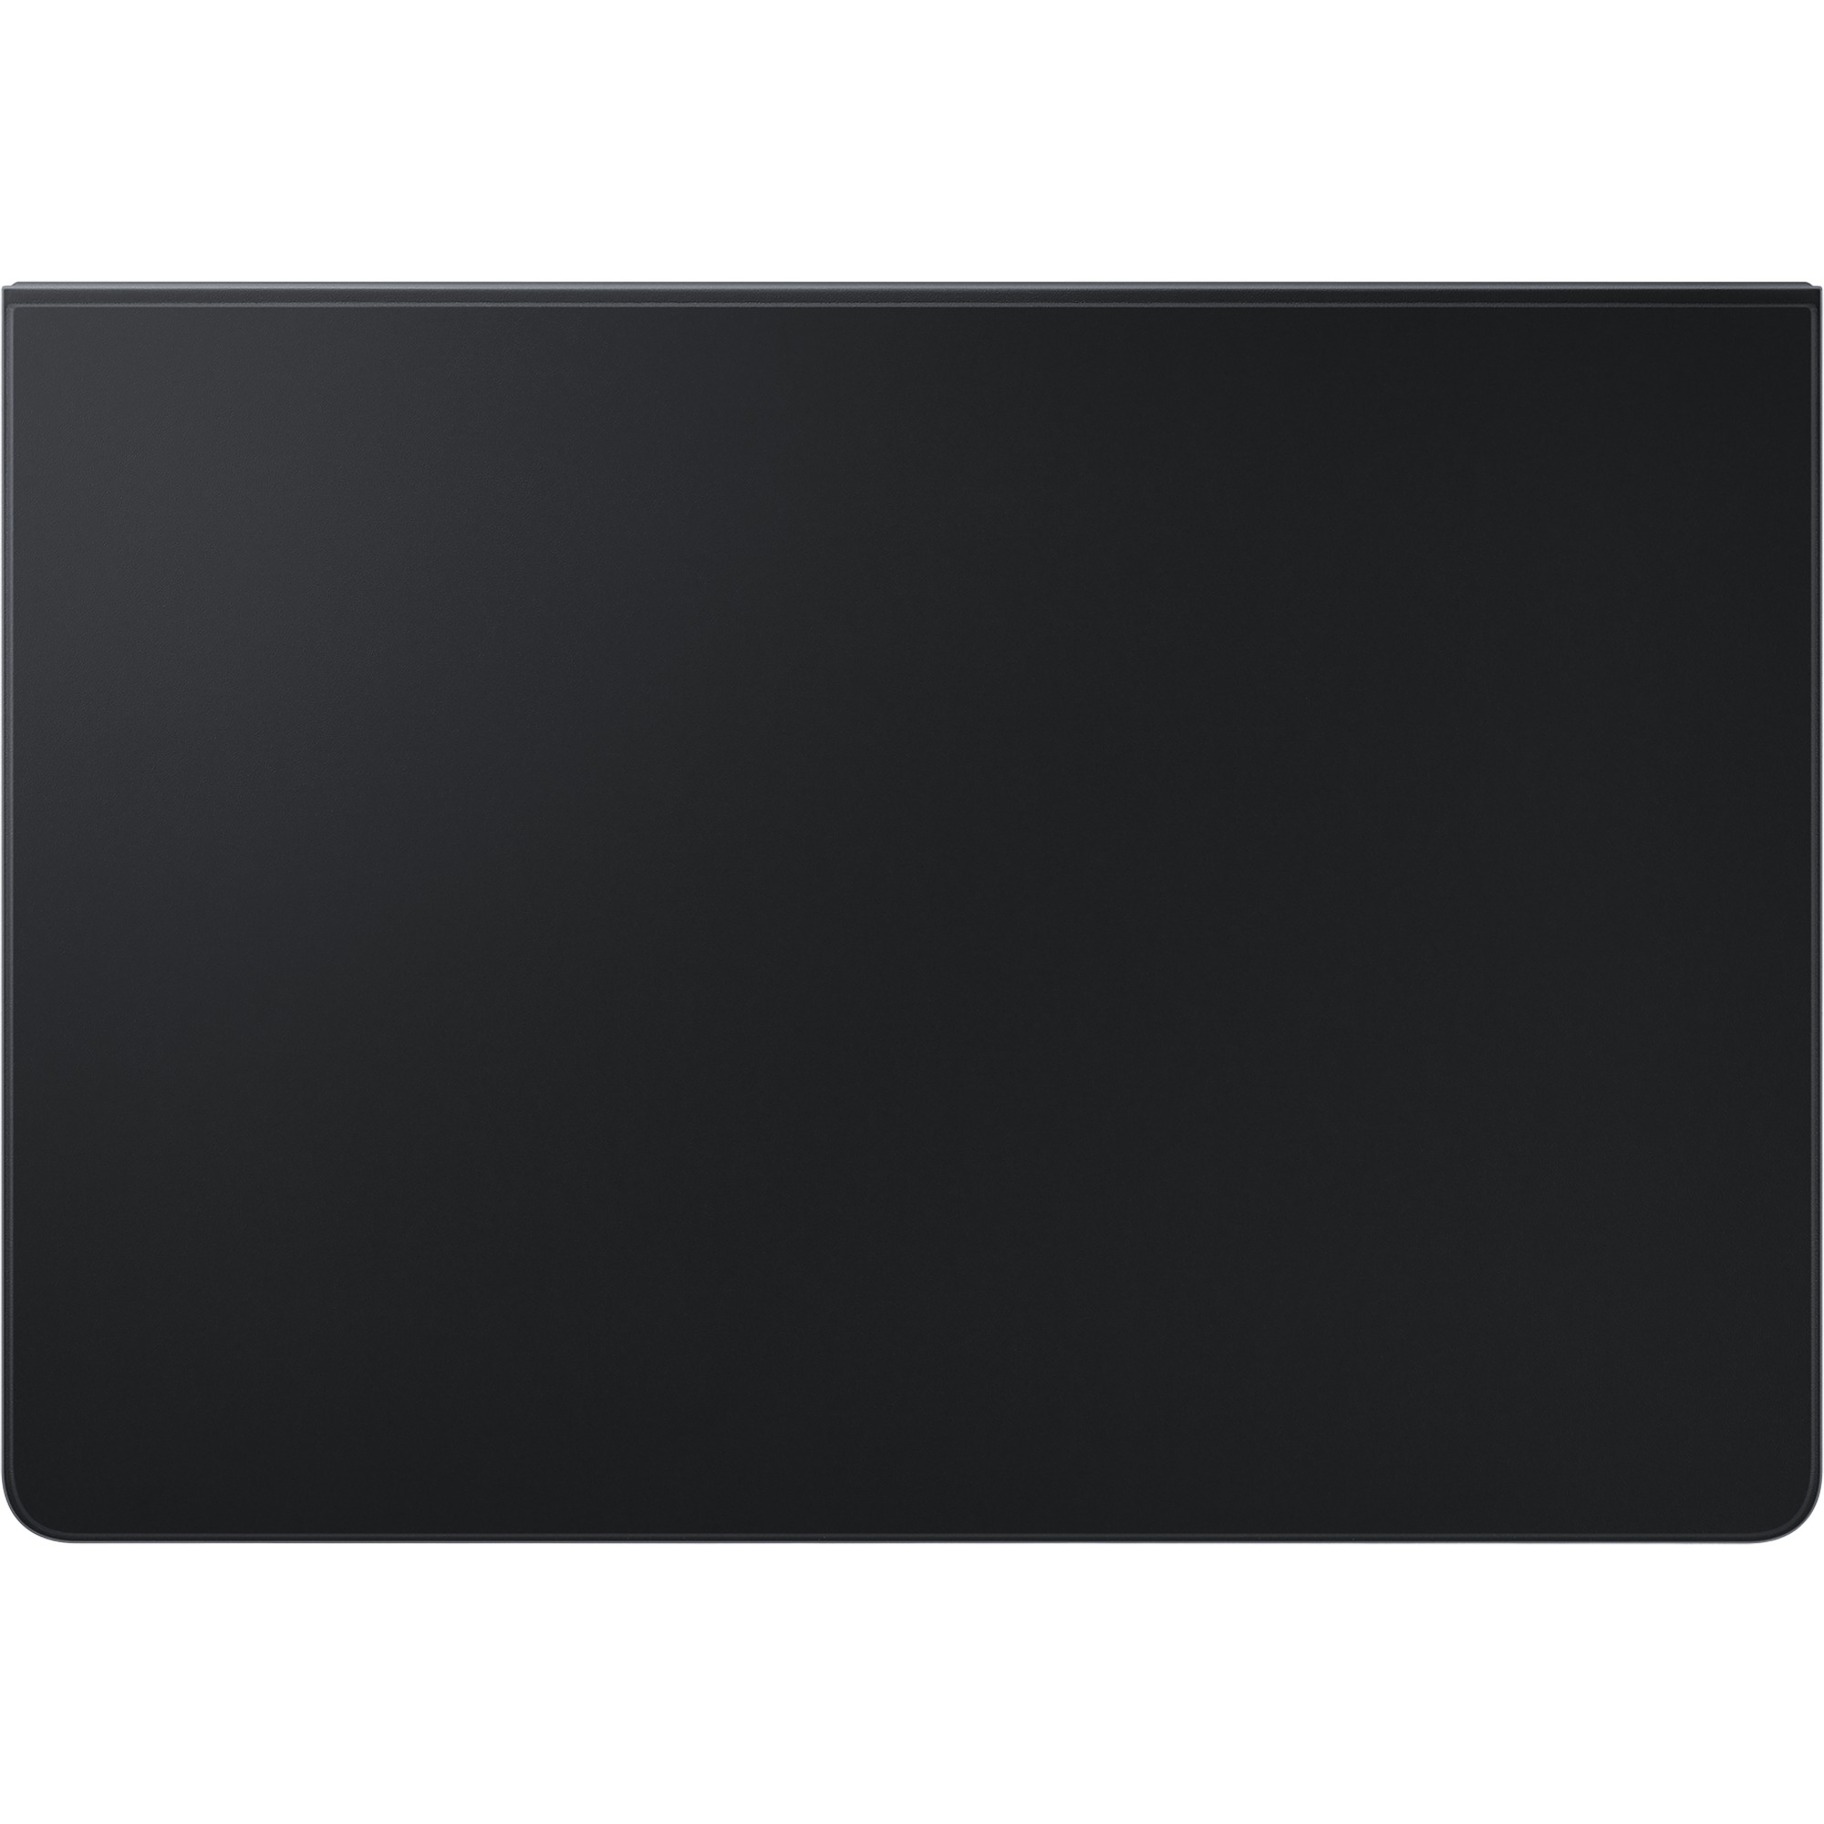 Image of Alternate - Book Cover Keyboard Slim EF-DT630 für das Galaxy Tab S7 online einkaufen bei Alternate